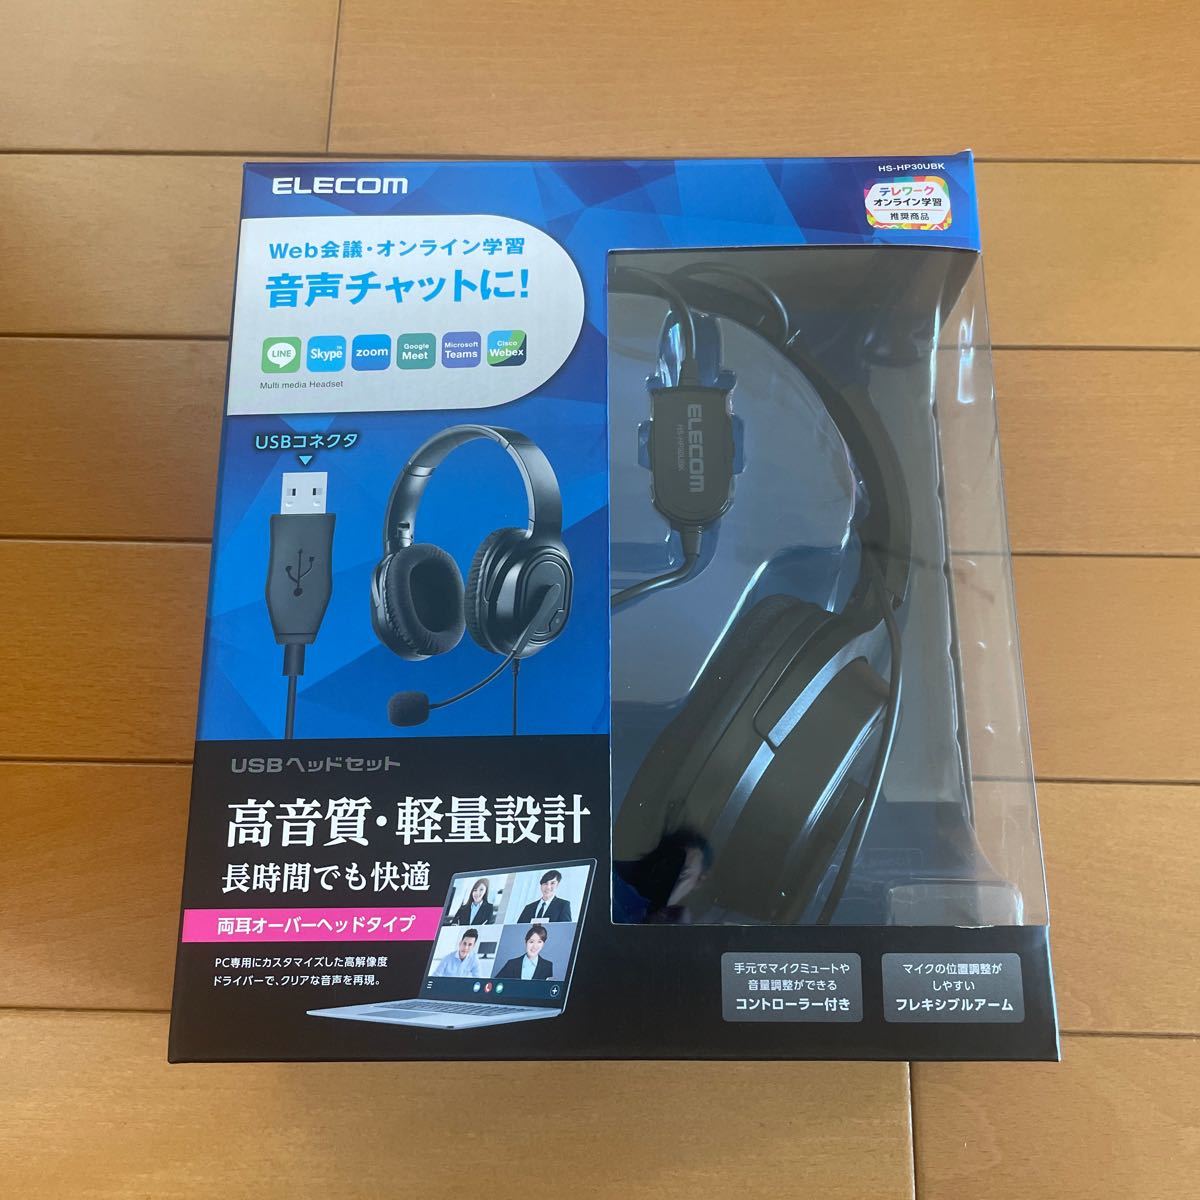 両耳オーバーヘッドタイプ USB ヘッドセット HS-HP30UBK